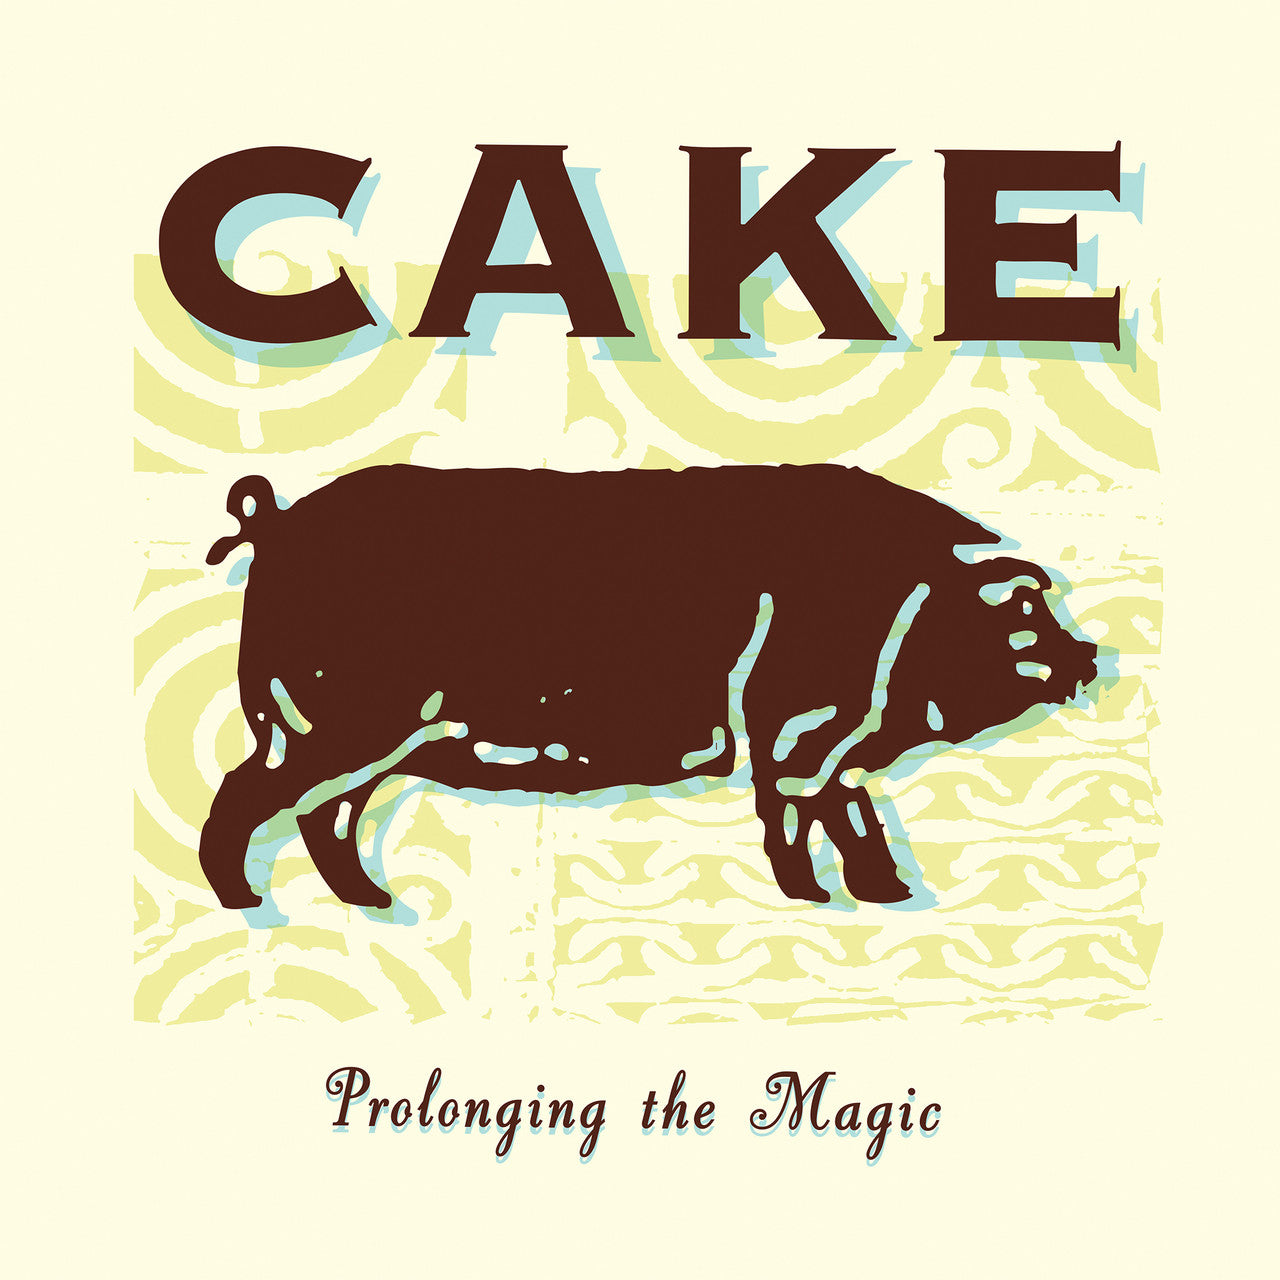 Cake - Prolongando la Magia - LP